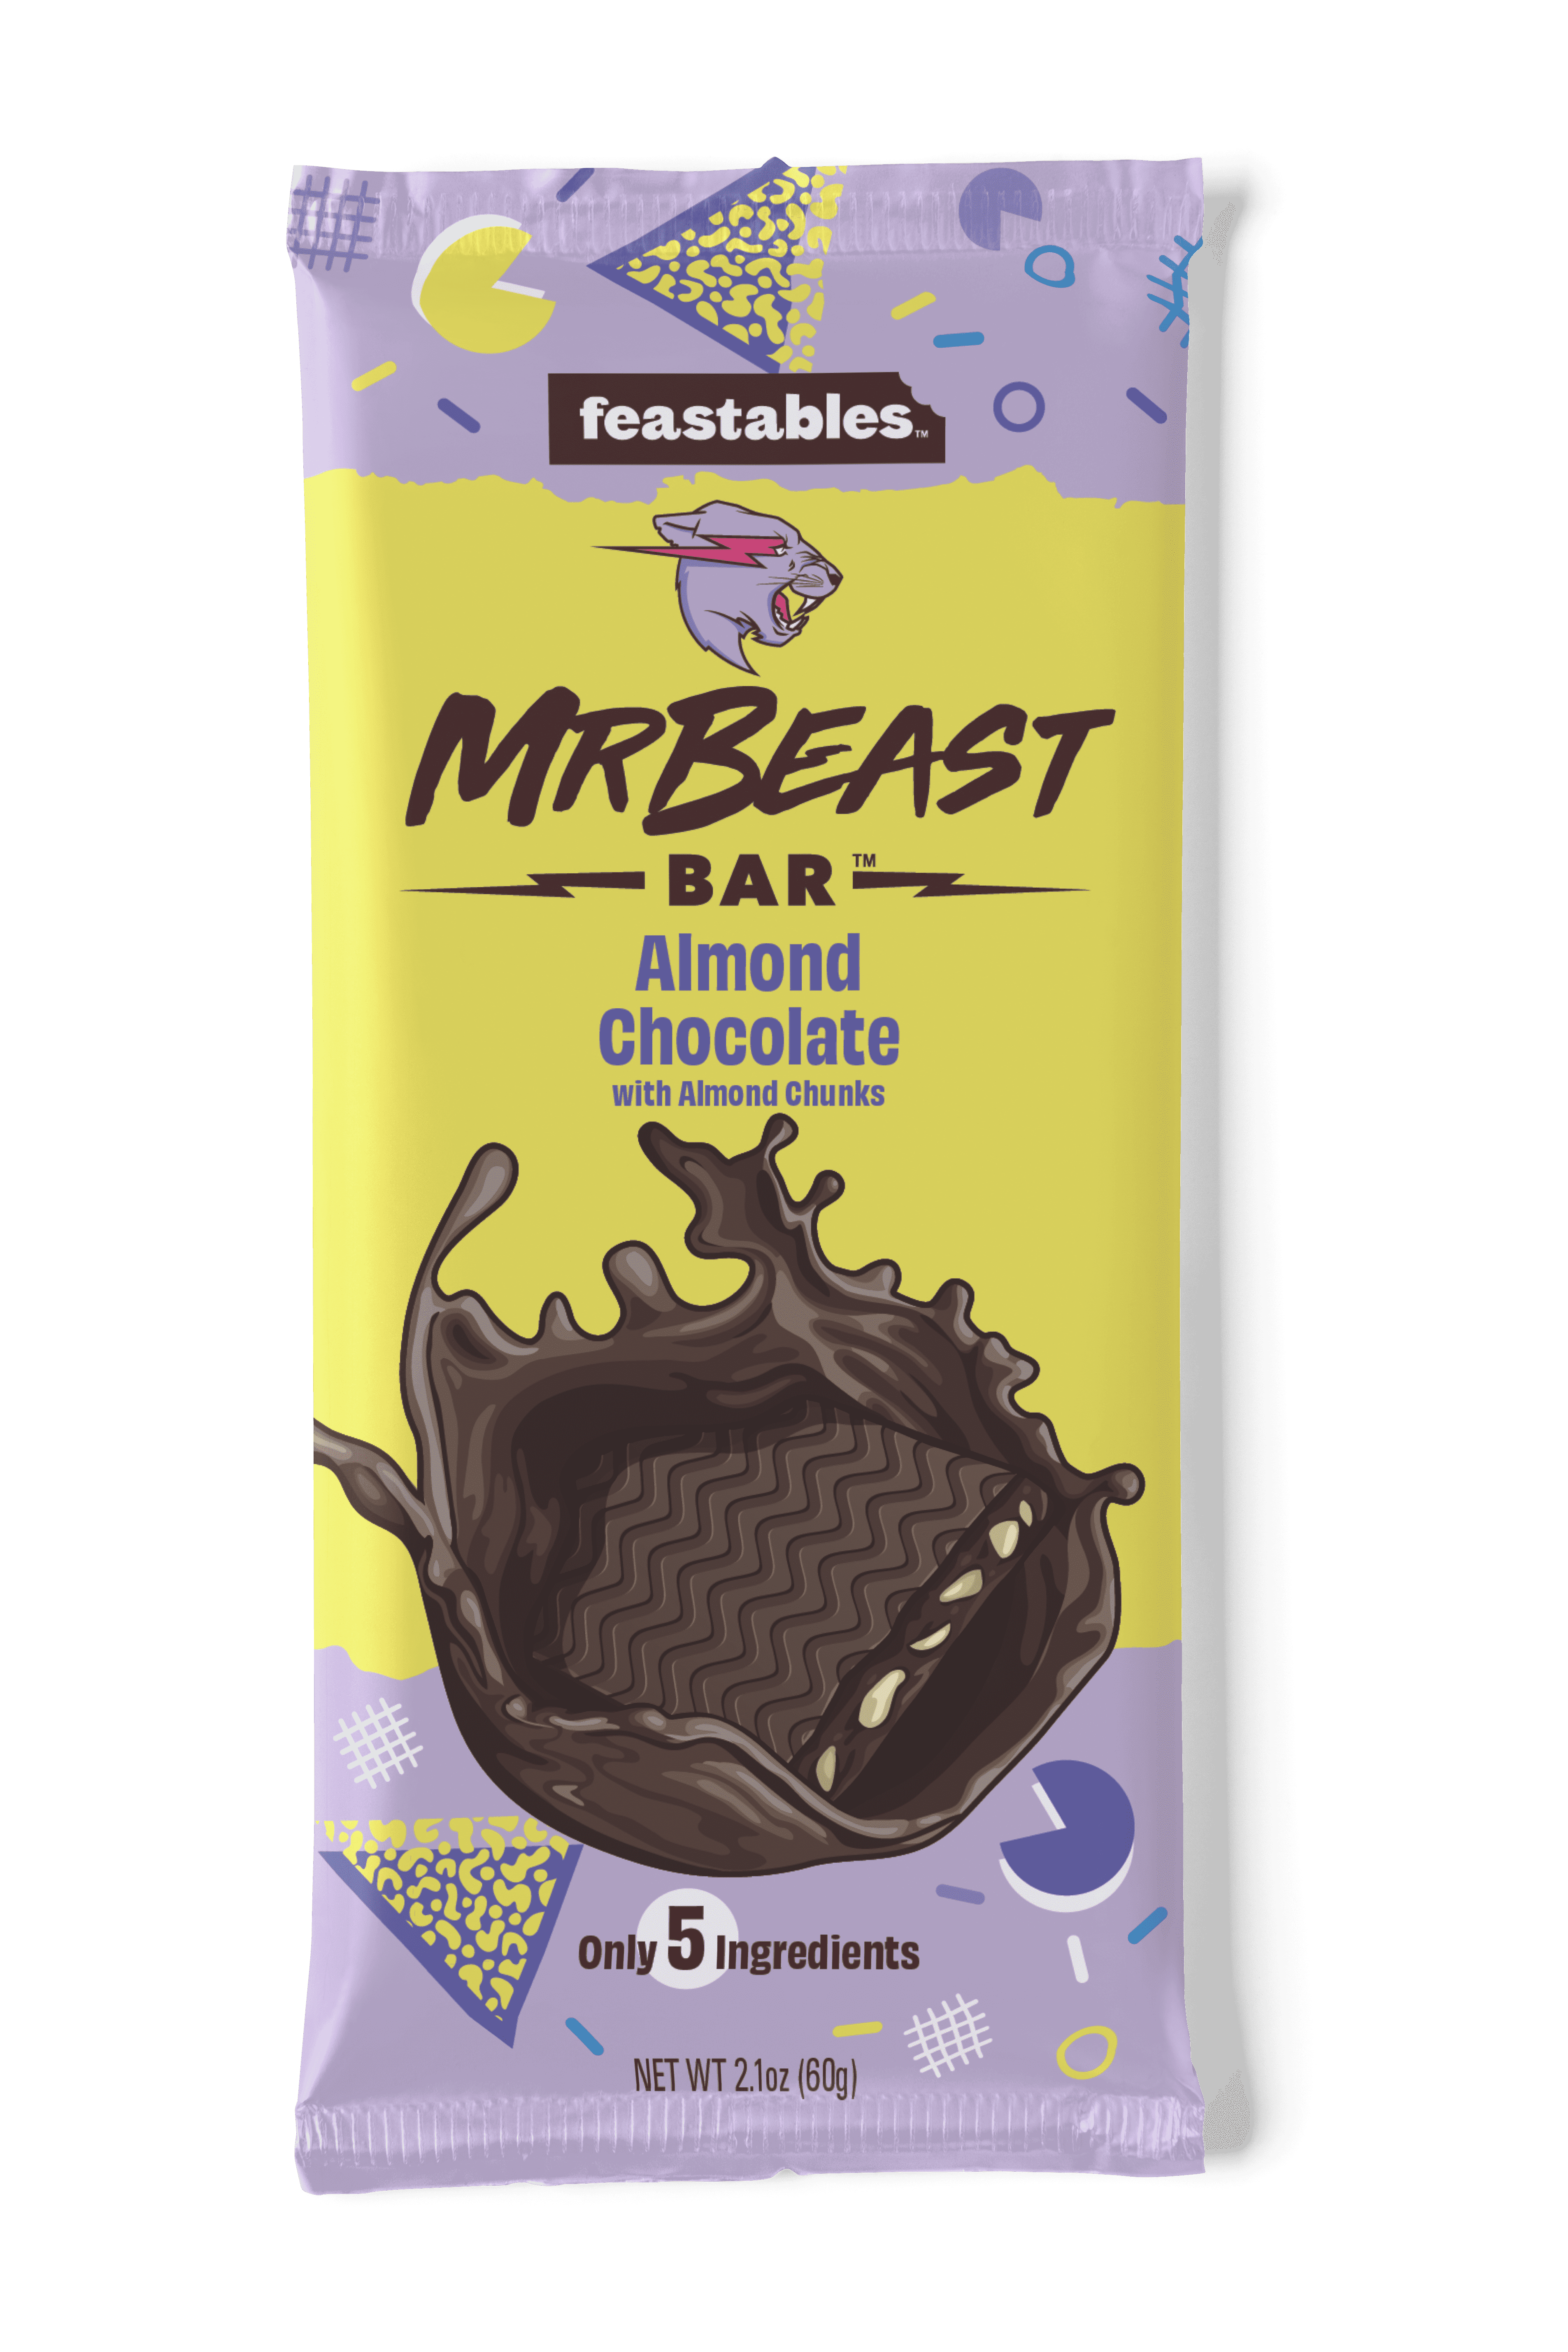 Feastables MrBeast Almond Chocolate Bar, 2.1 oz (60g), 1 bar - Walmart.com